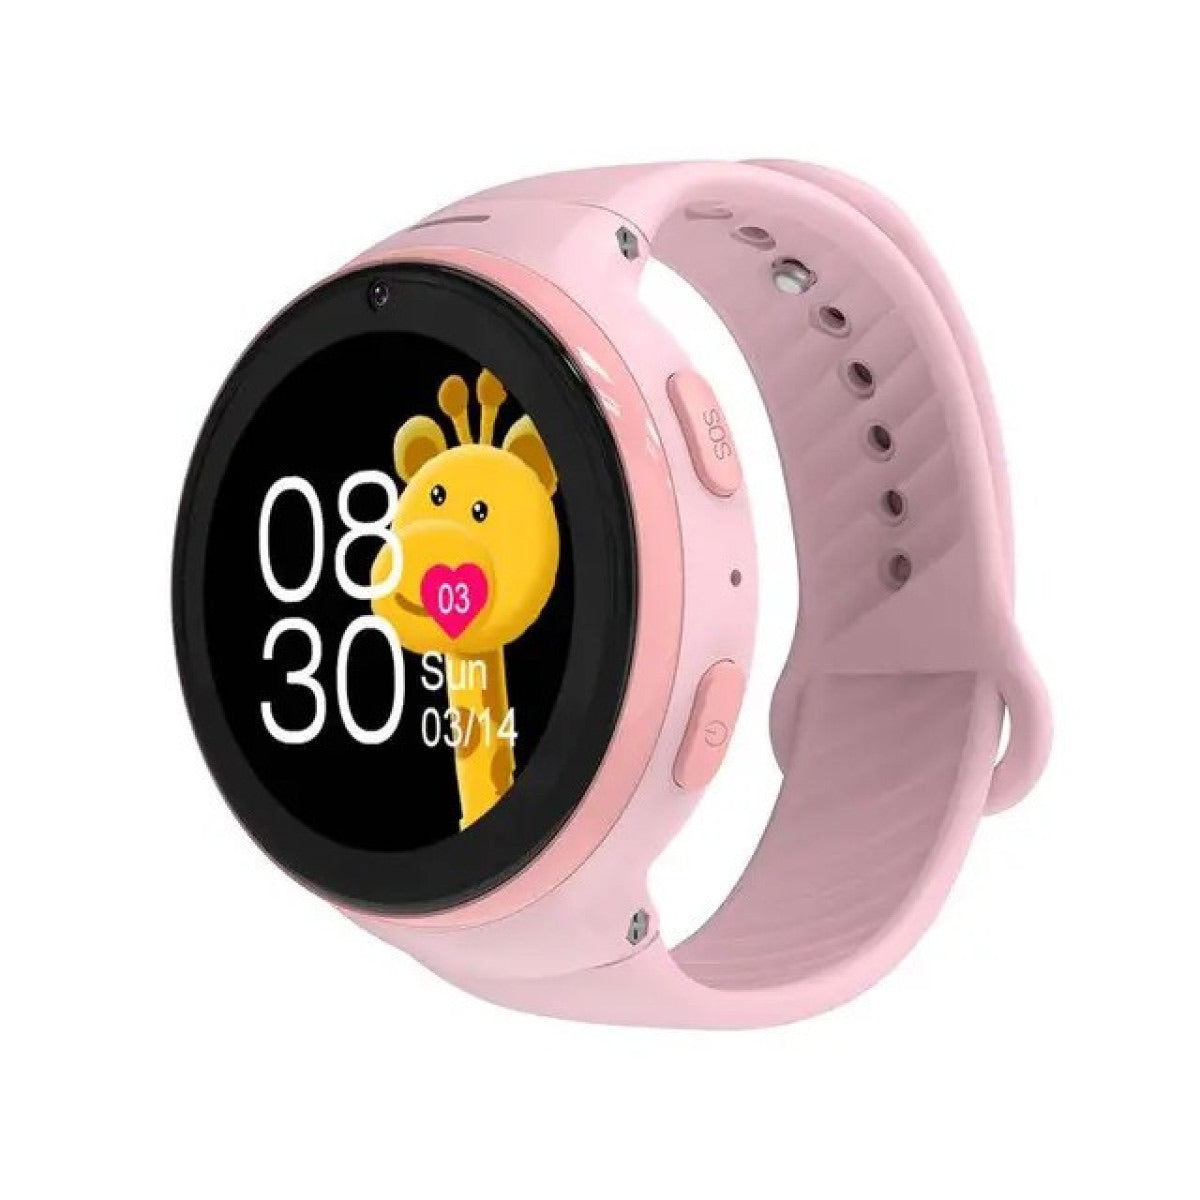 Porodo Kids 4g Smart watch With whatsapp